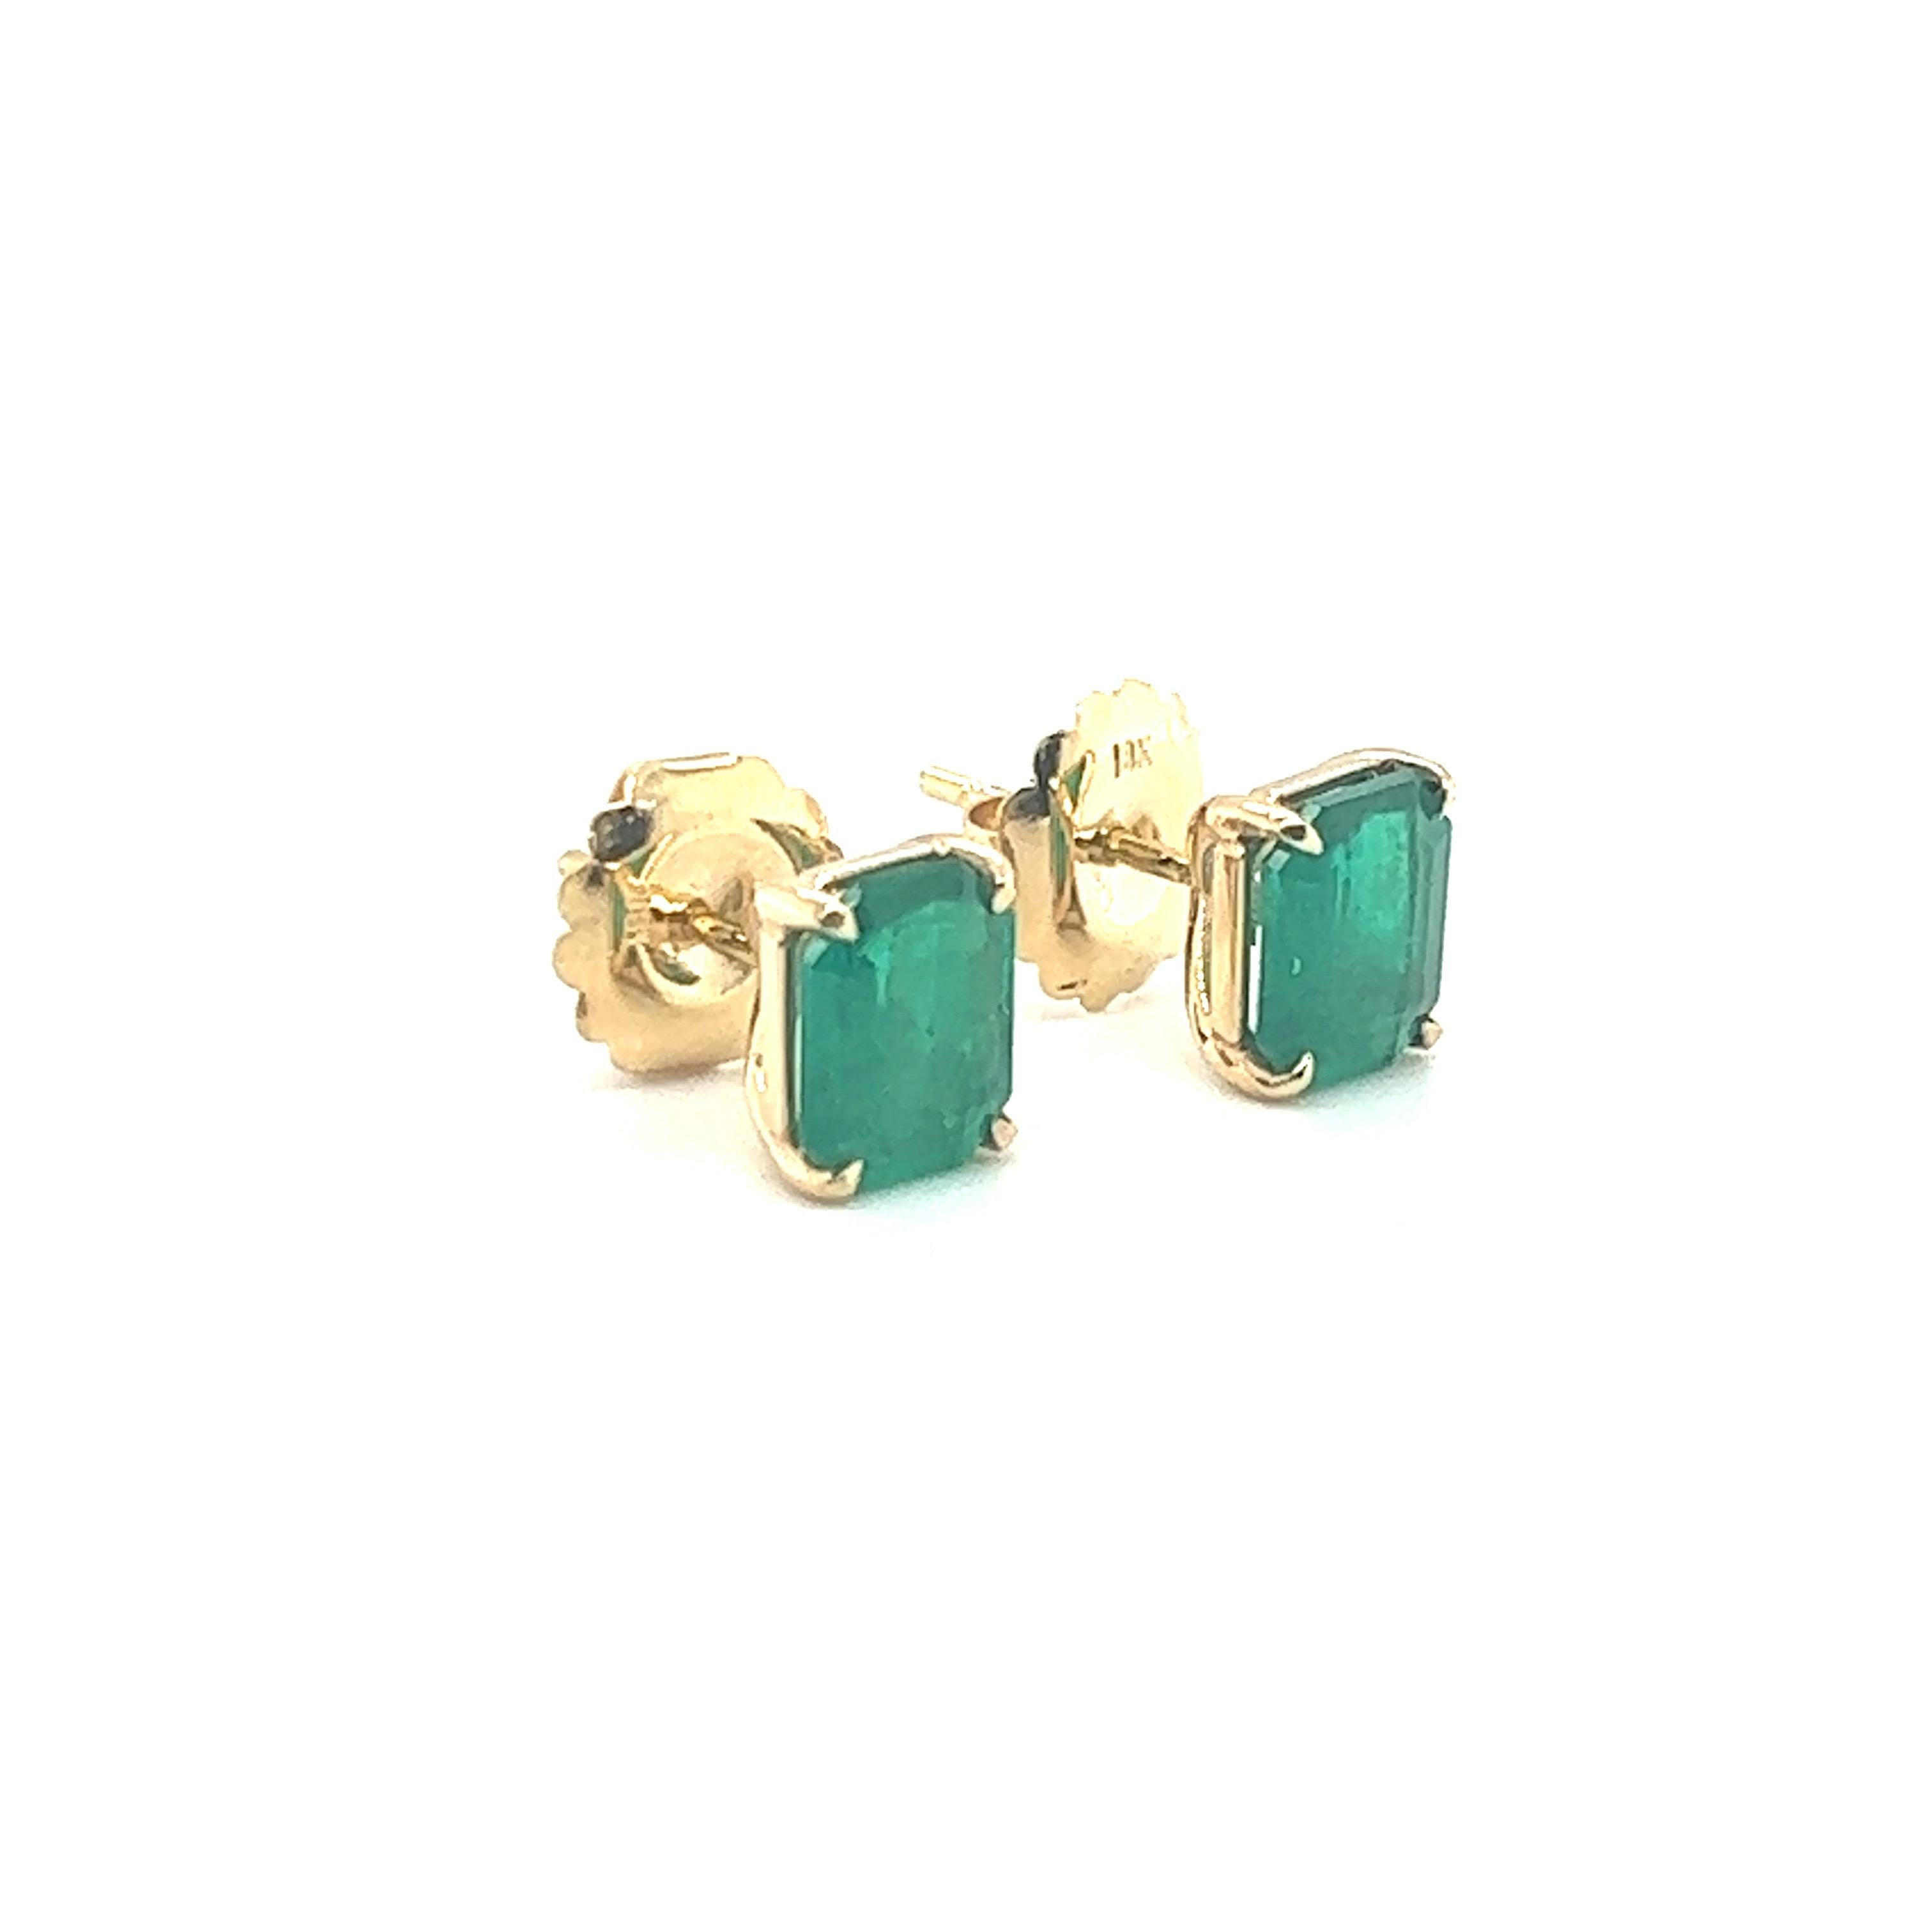 4 Carat Colombian Emerald Cut Stud Earrings 18k Yellow Gold For Sale 4